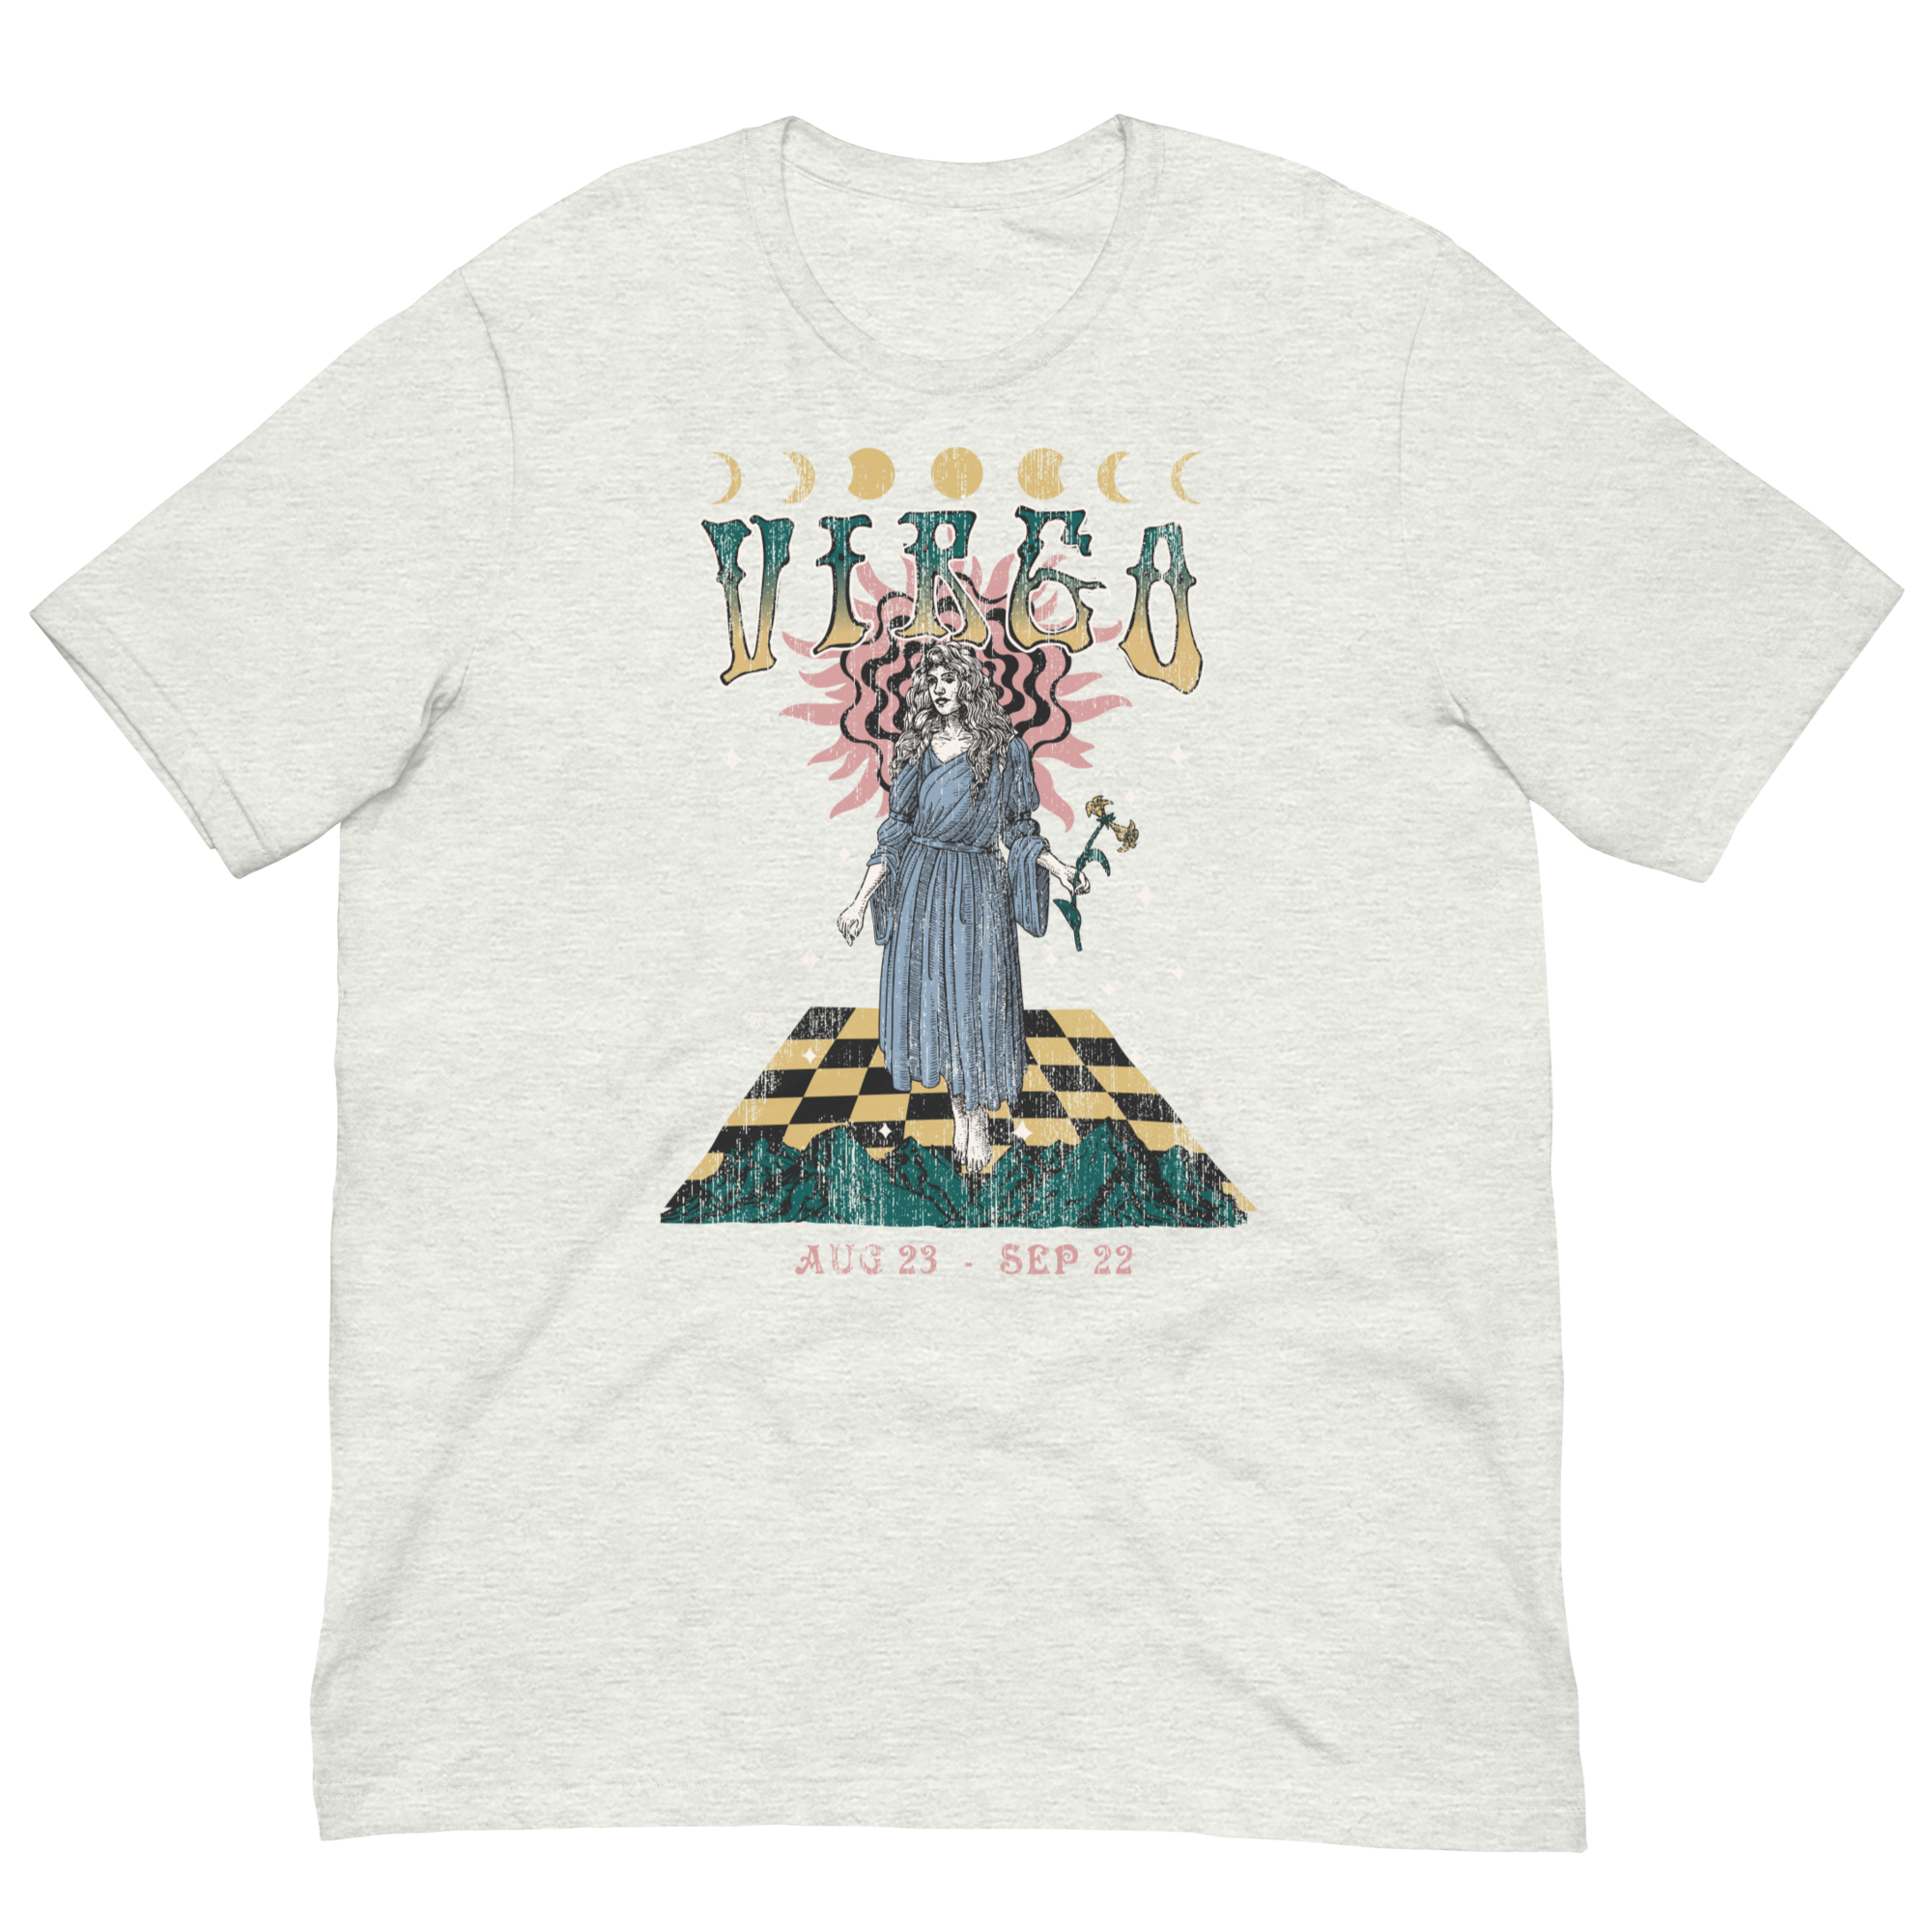 Virgo Band T-Shirt Inspired Graphic Tee